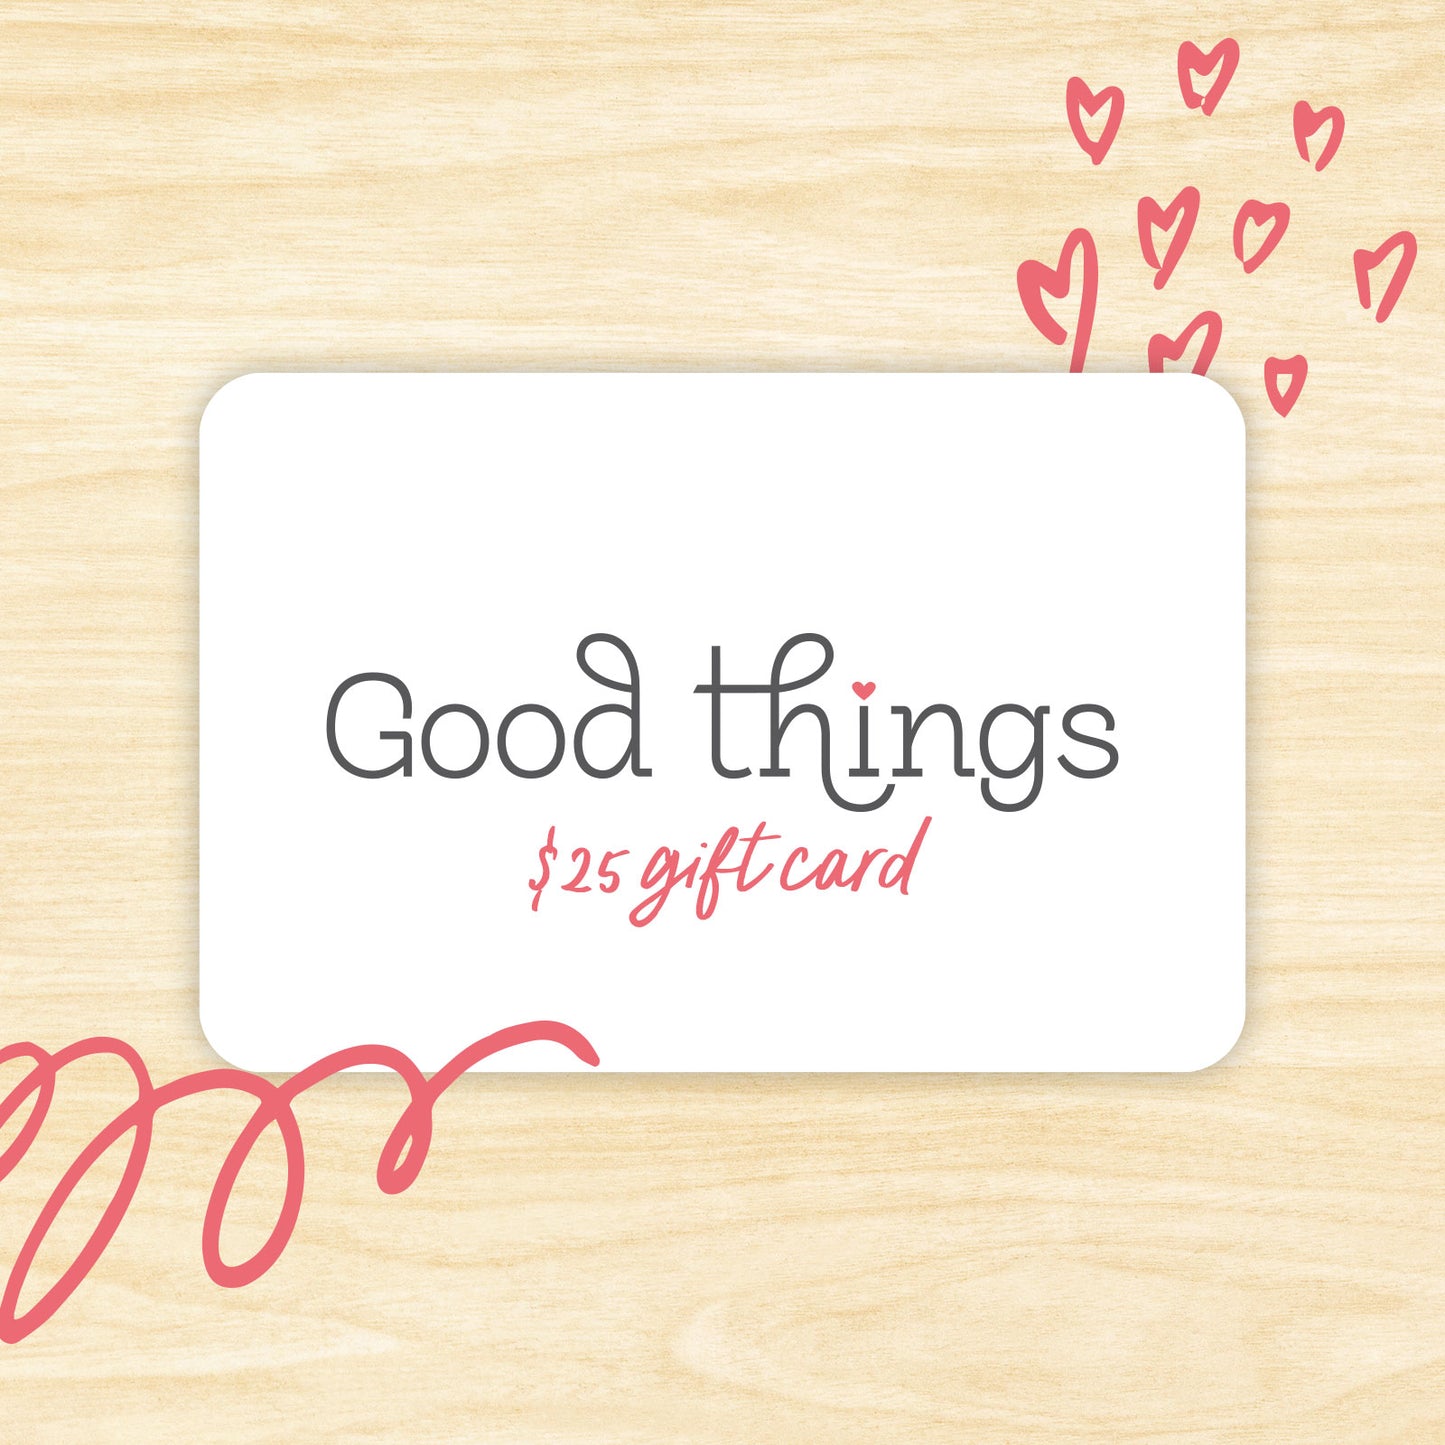 Good Things Digital Gift Card